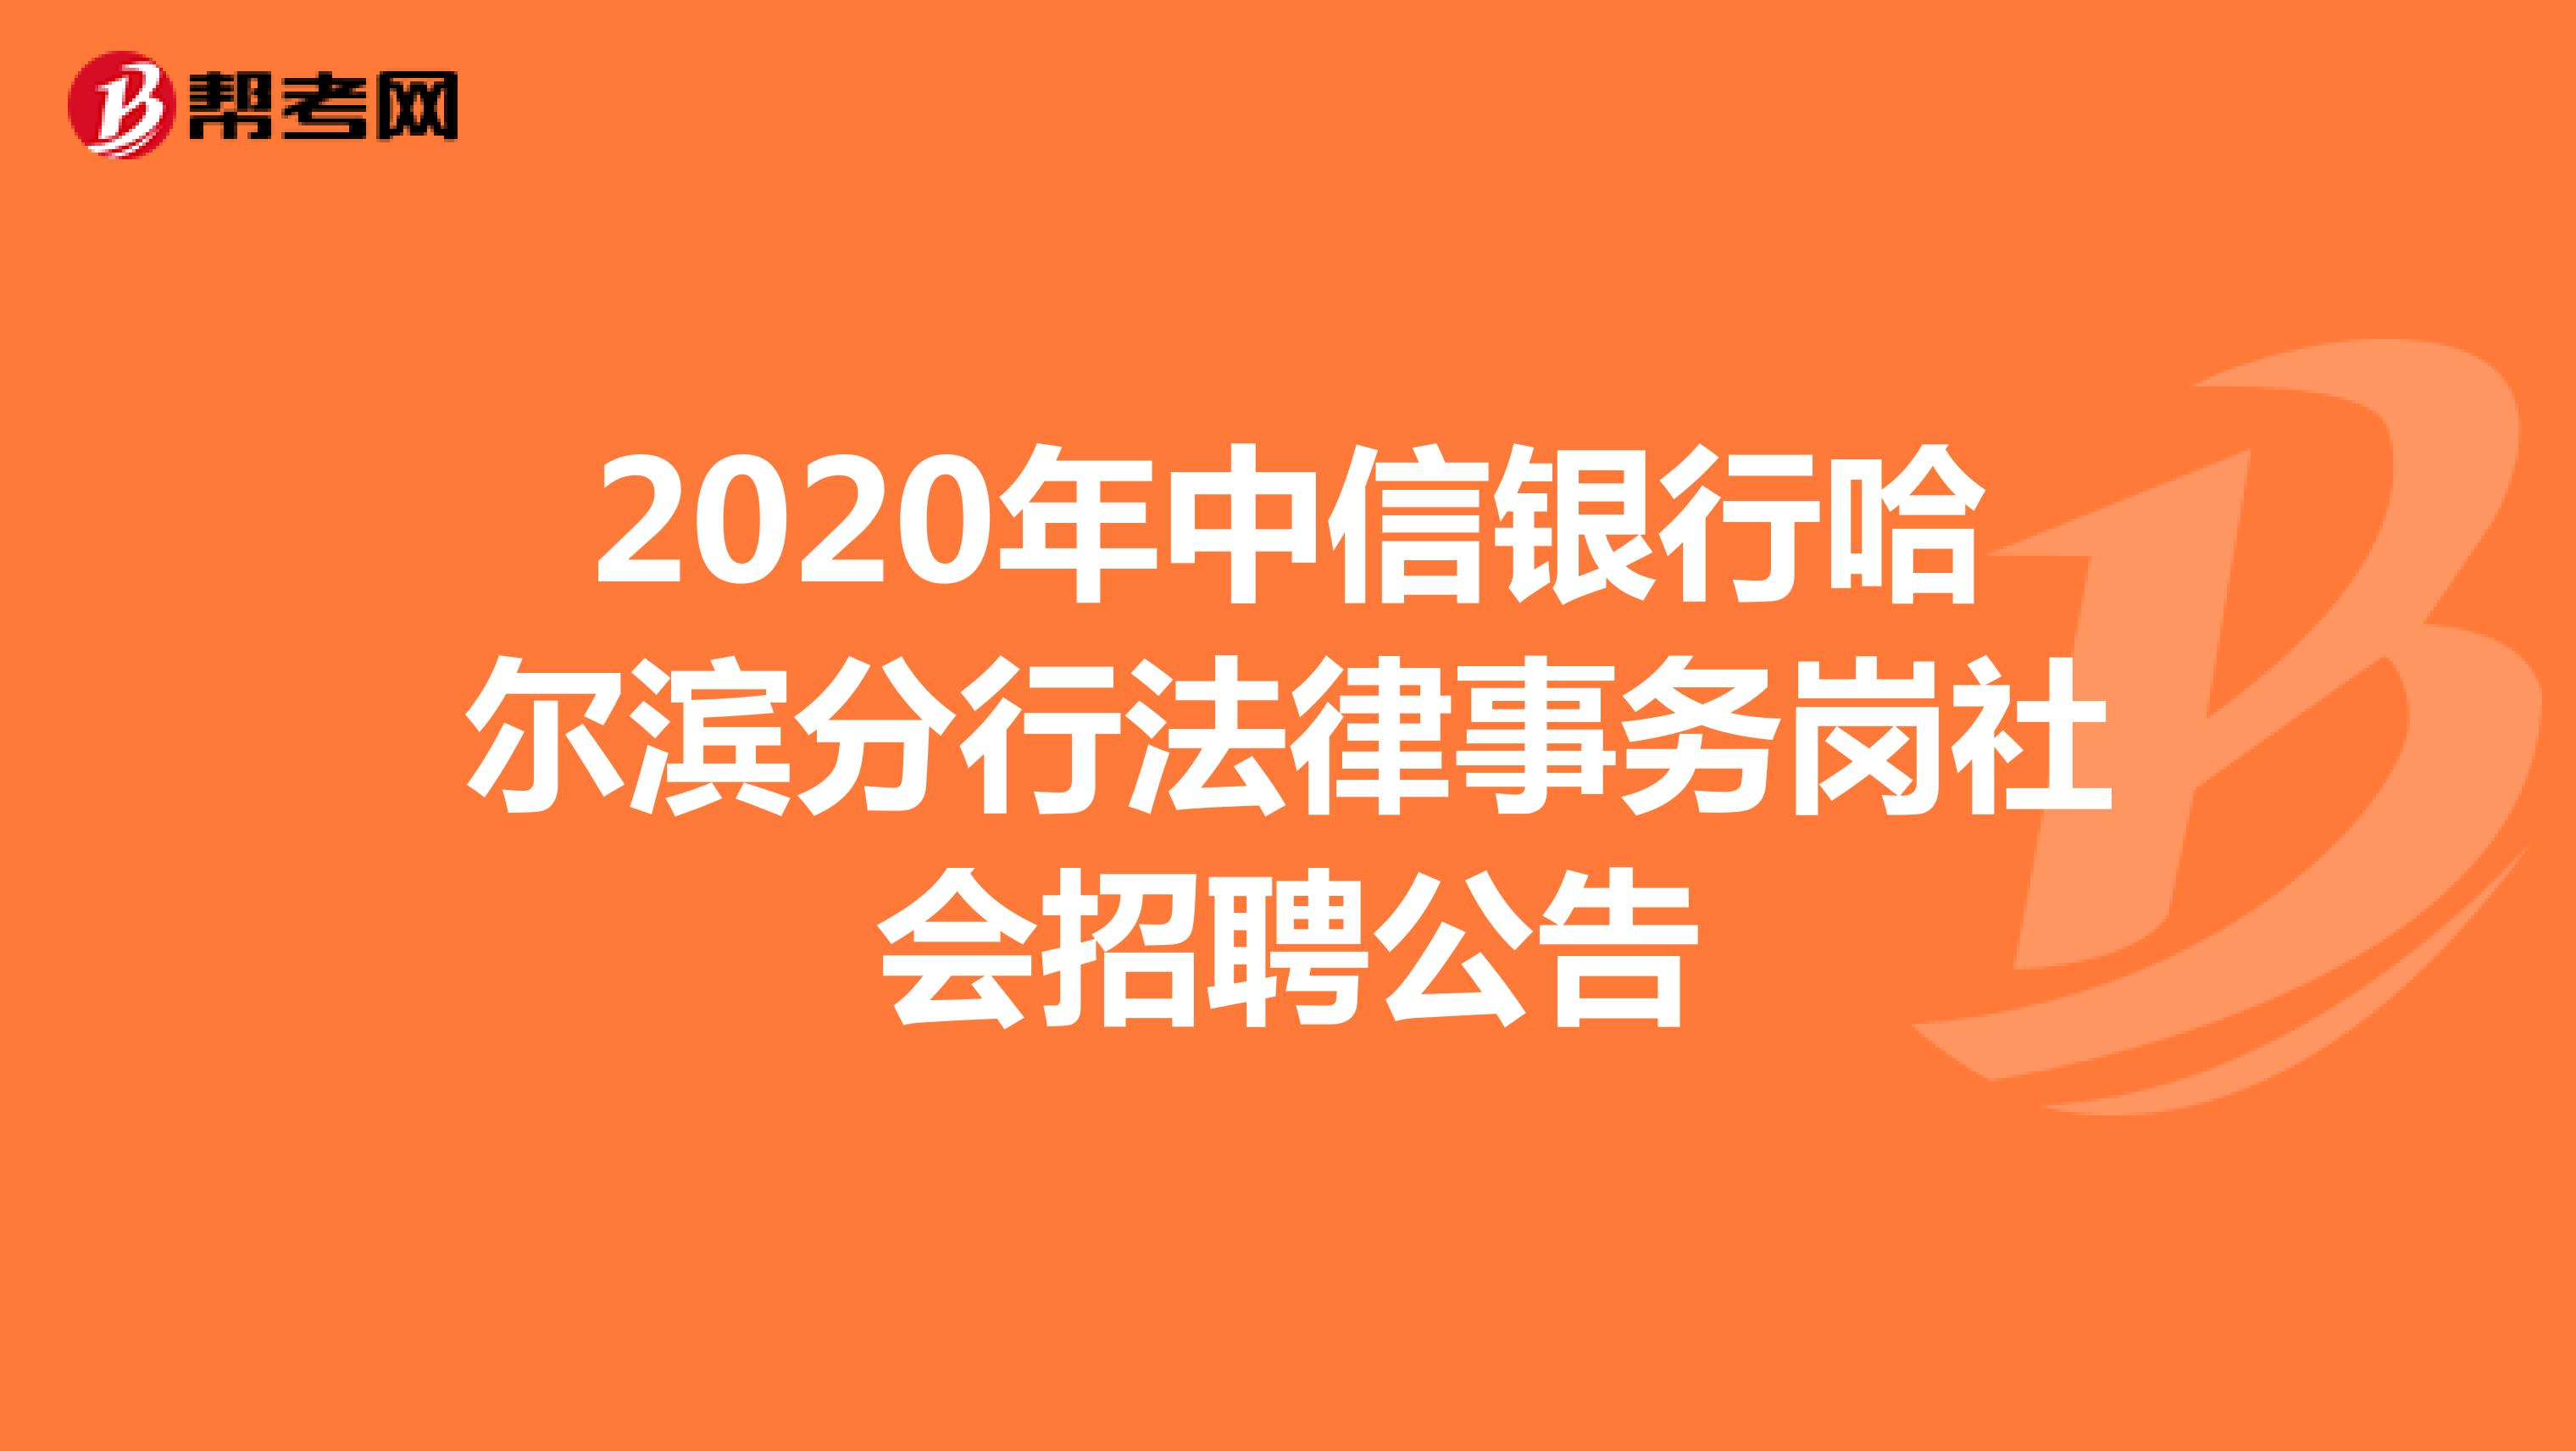 2020年中信银行哈尔滨分行法律事务岗社会招聘公告